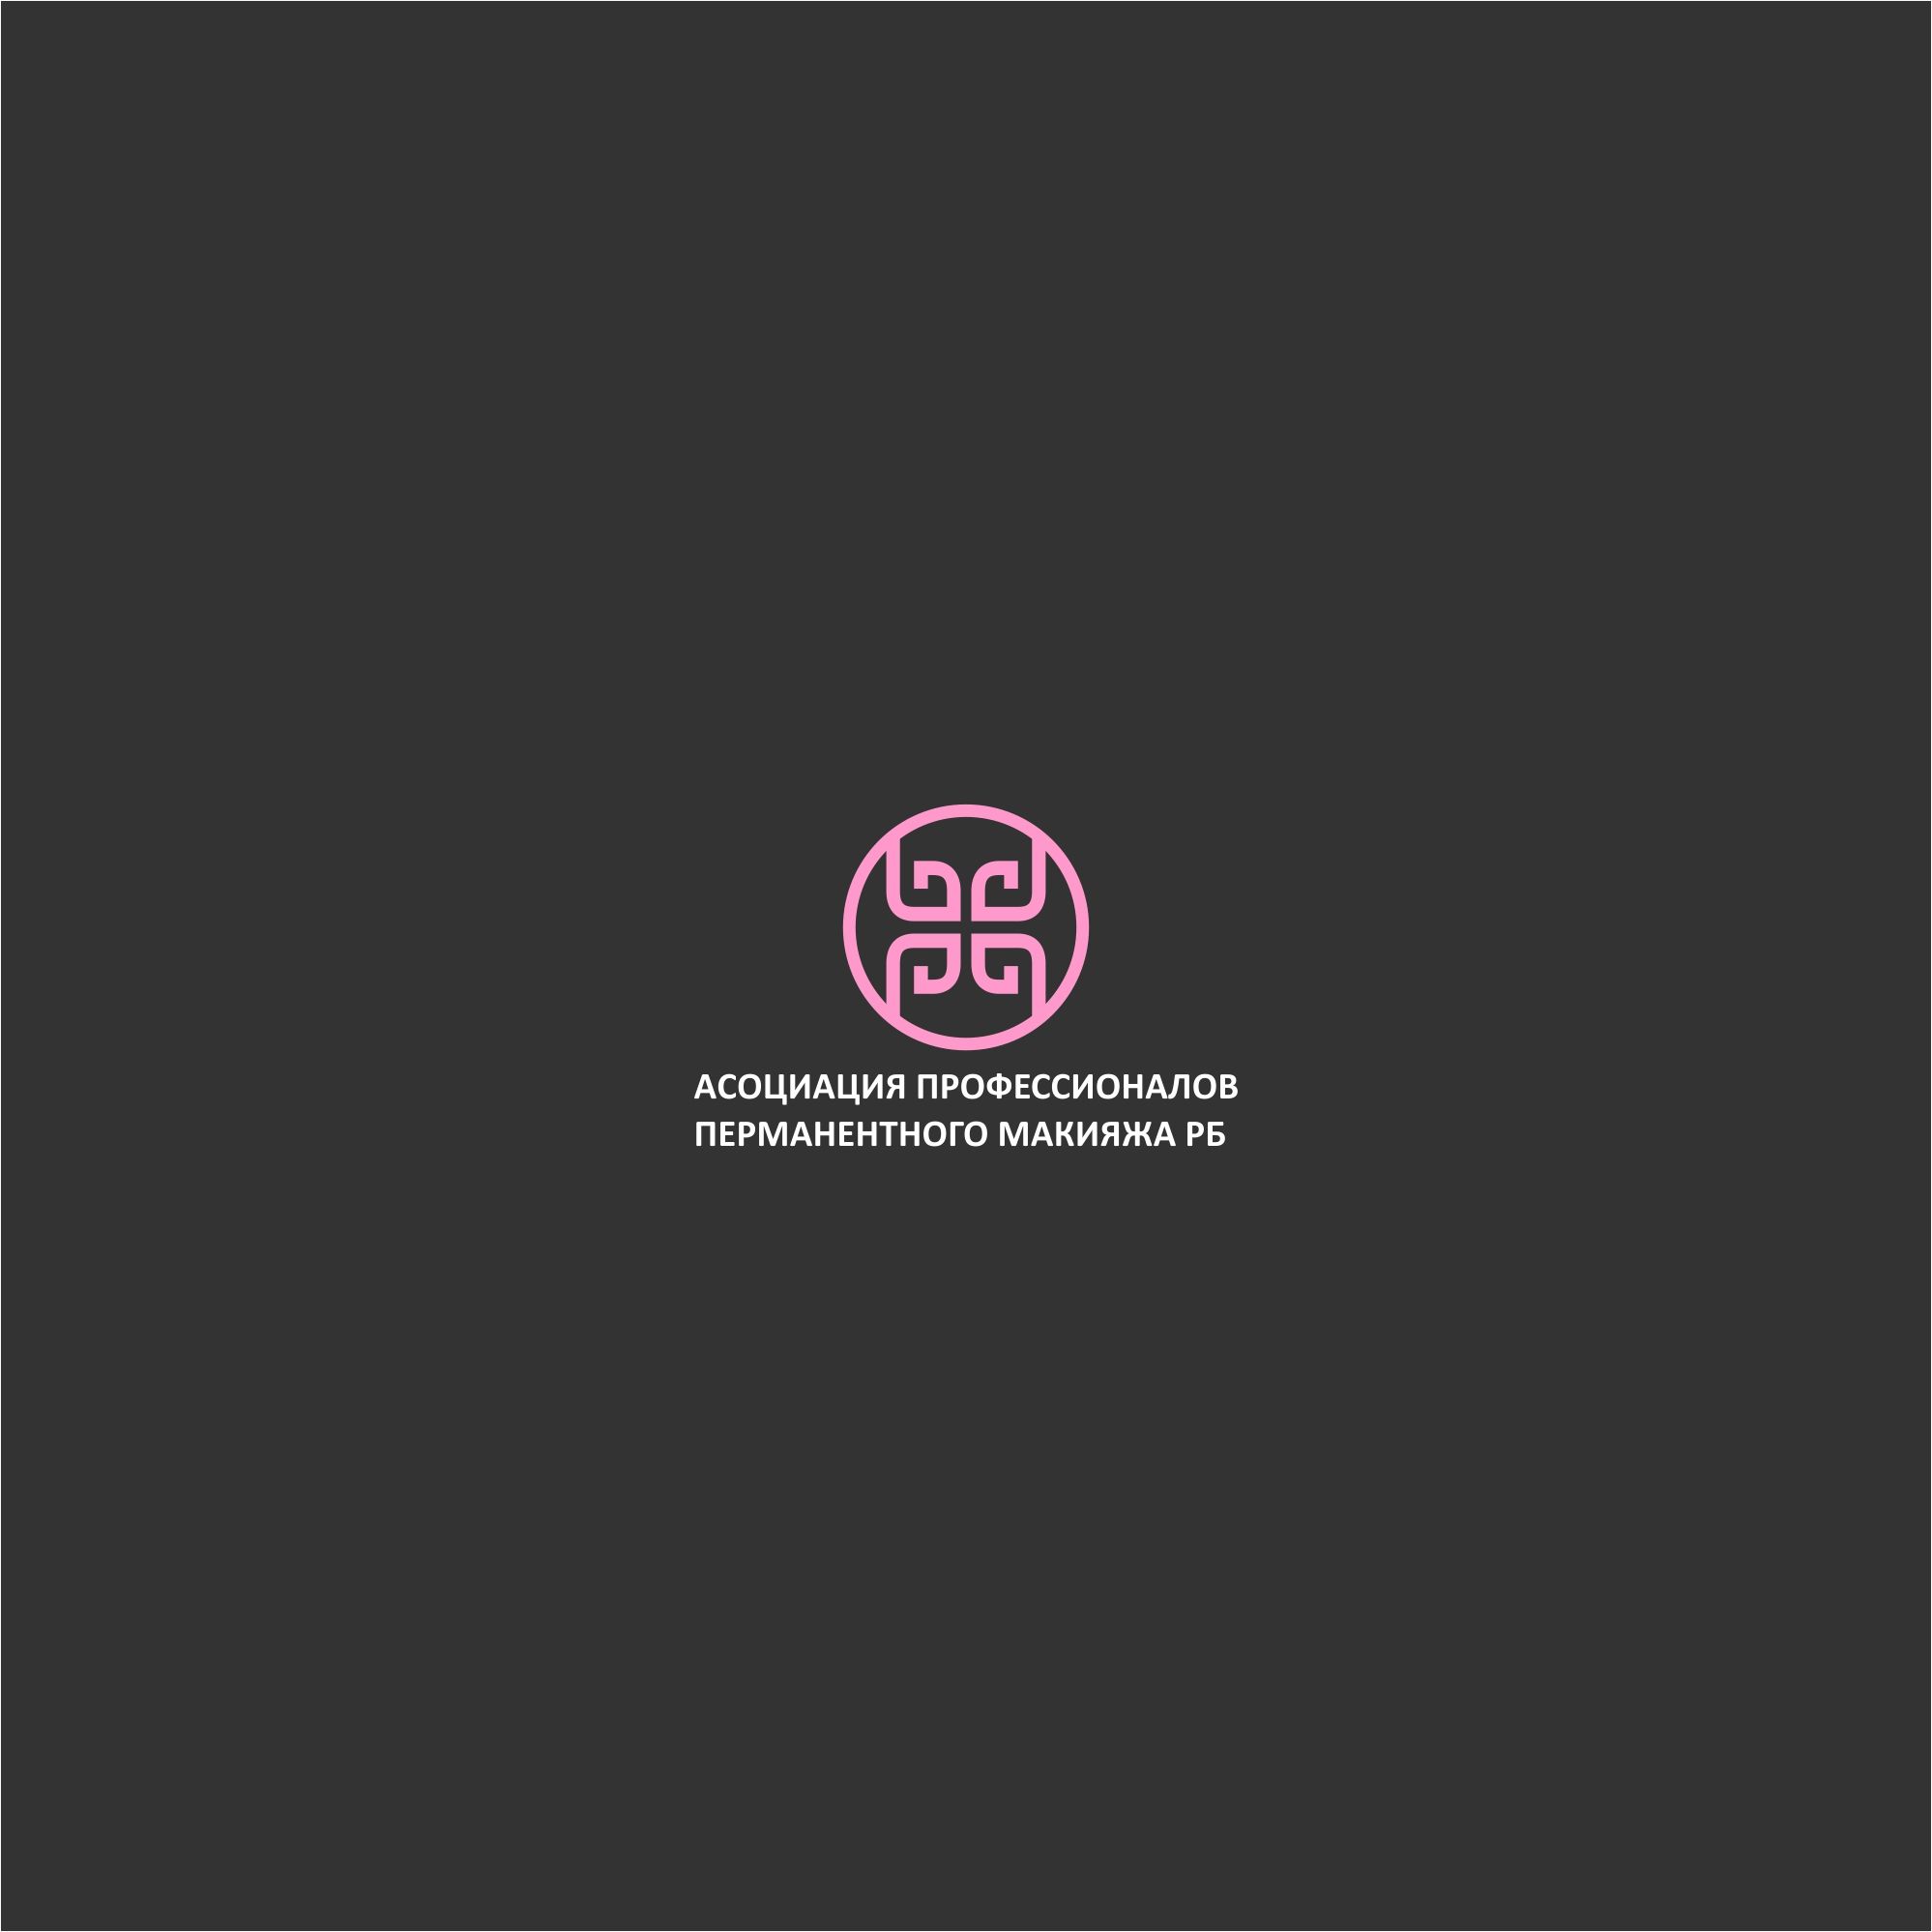 Лого и фирменный стиль для Асоциация профессионалов перманентного макияжа РБ - дизайнер serz4868